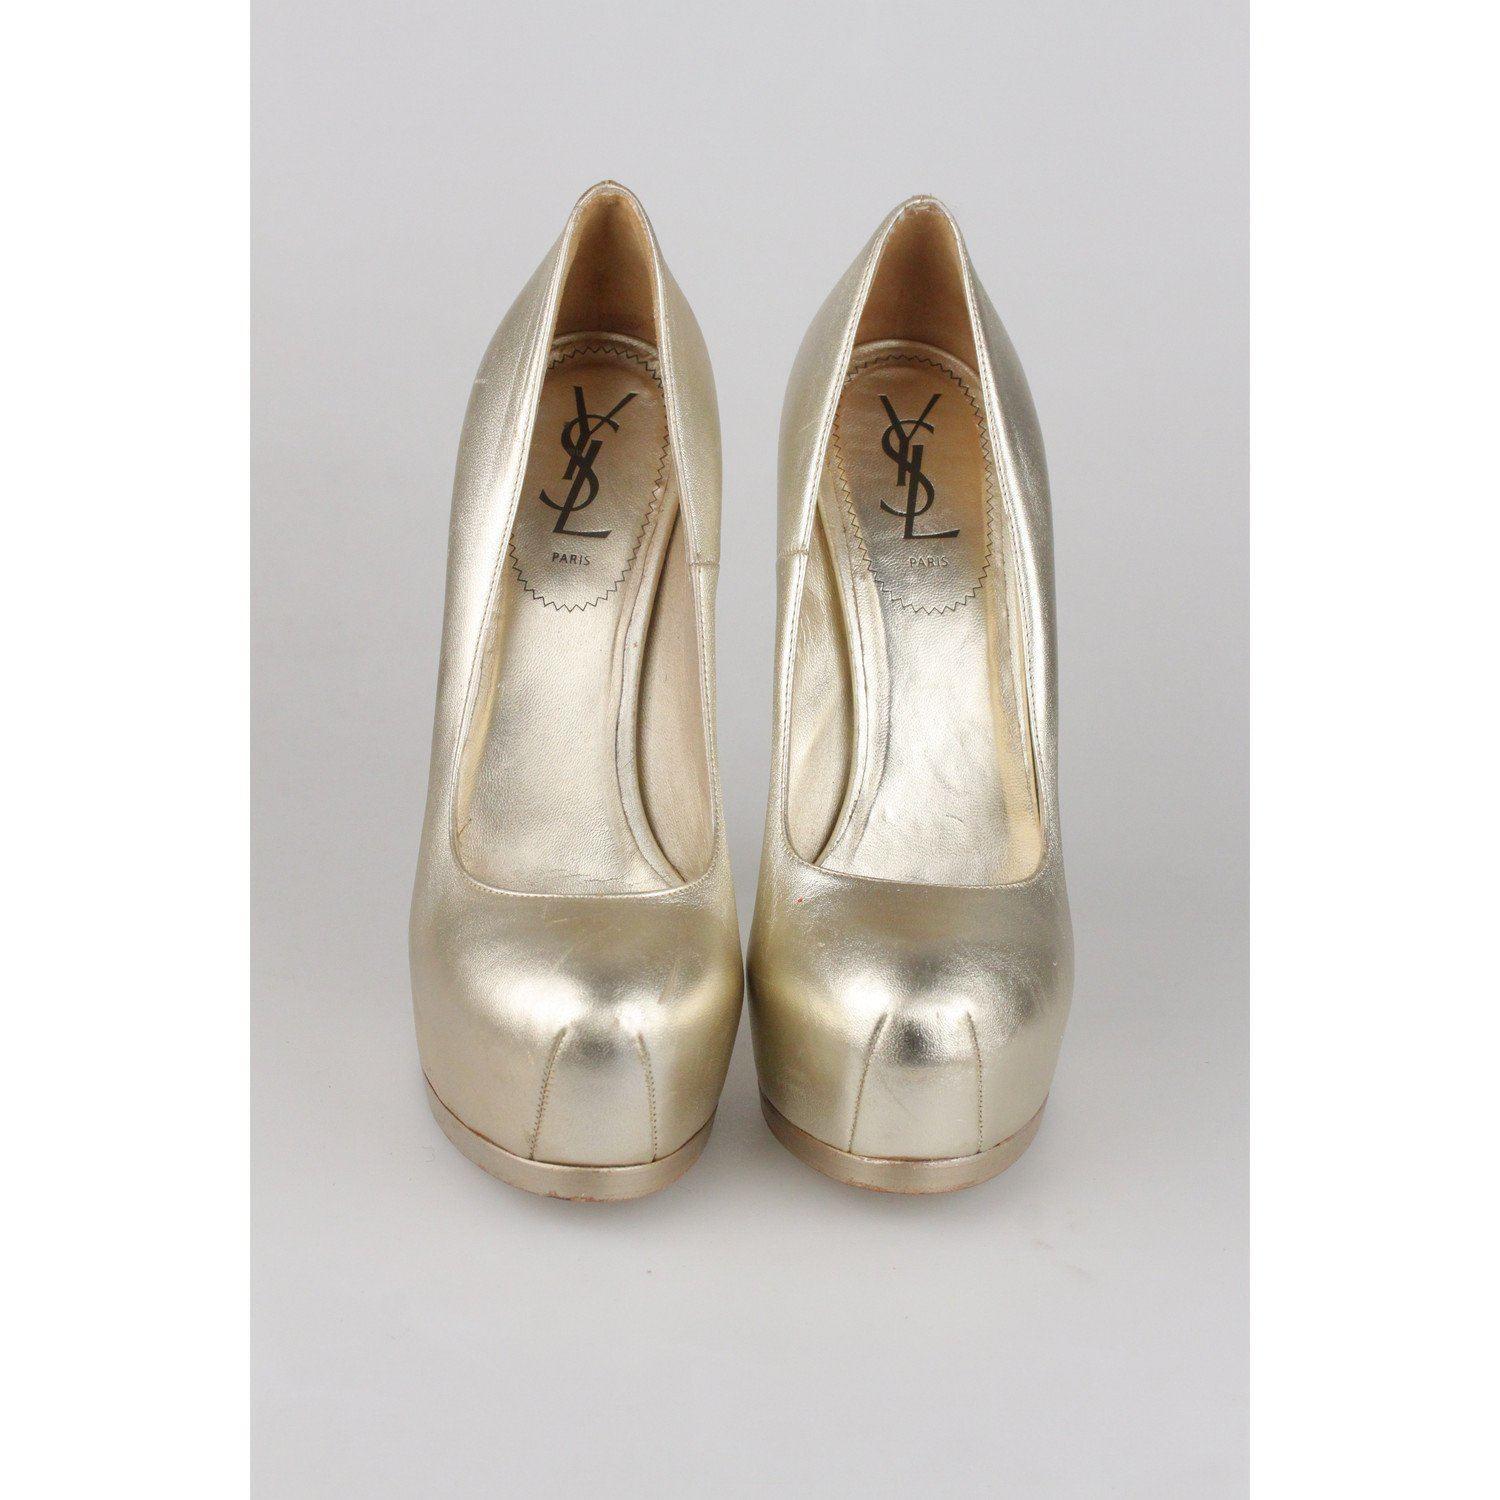 YVES SAINT LAURENT Gold Metal Leather Platform Pumps Heels Shoes Size 39 2